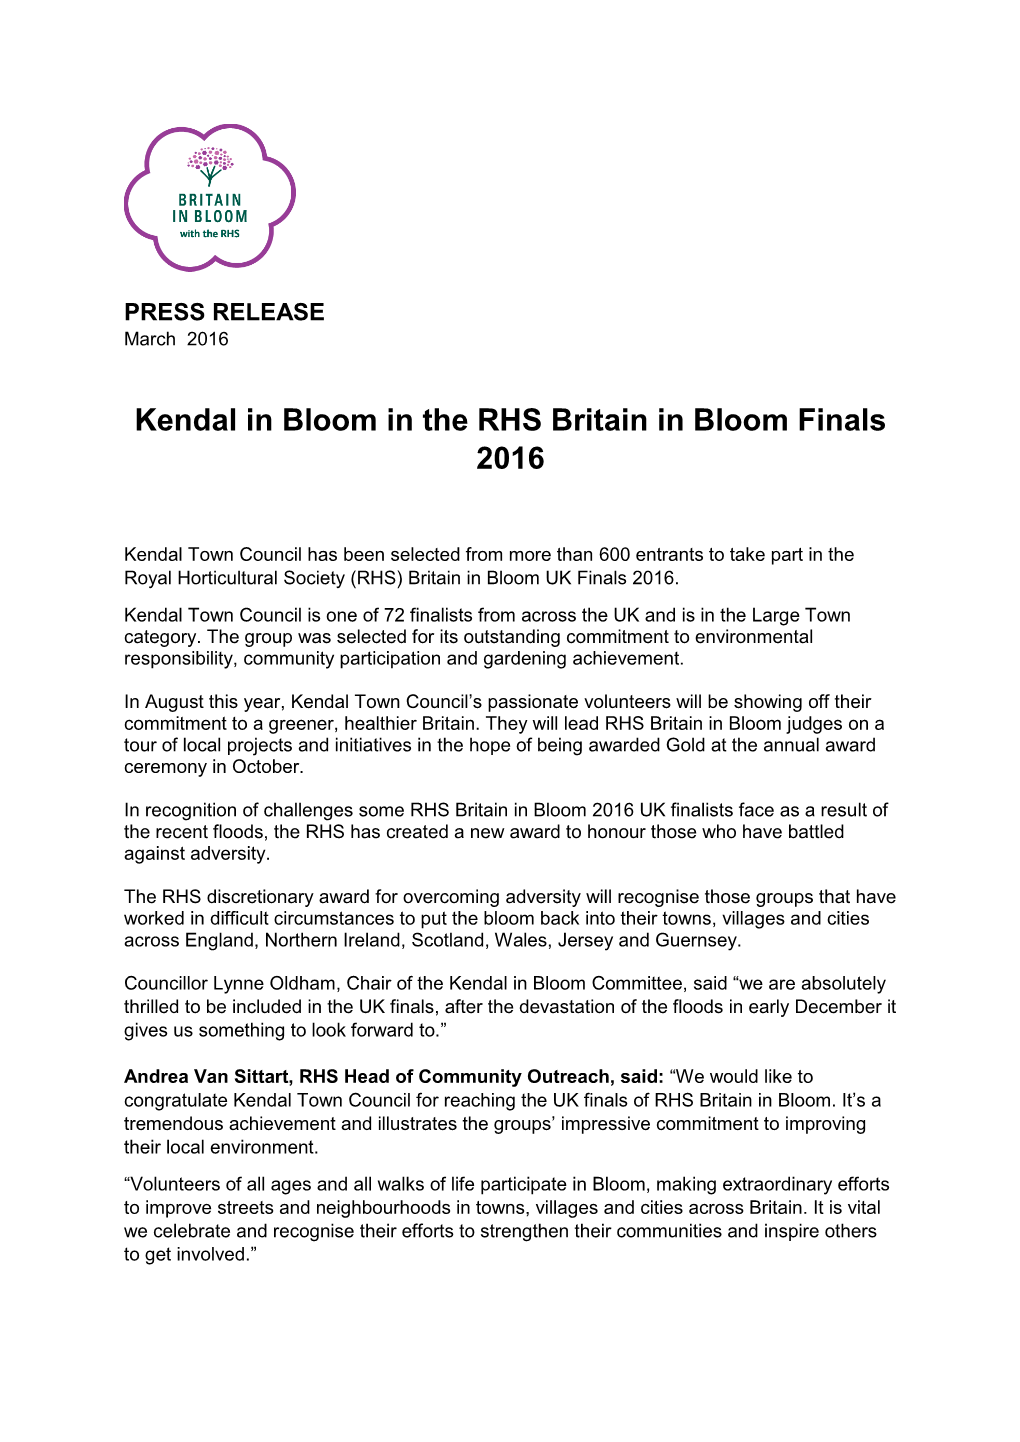 Kendal in Bloom in the RHS Britain in Bloom Finals 2016